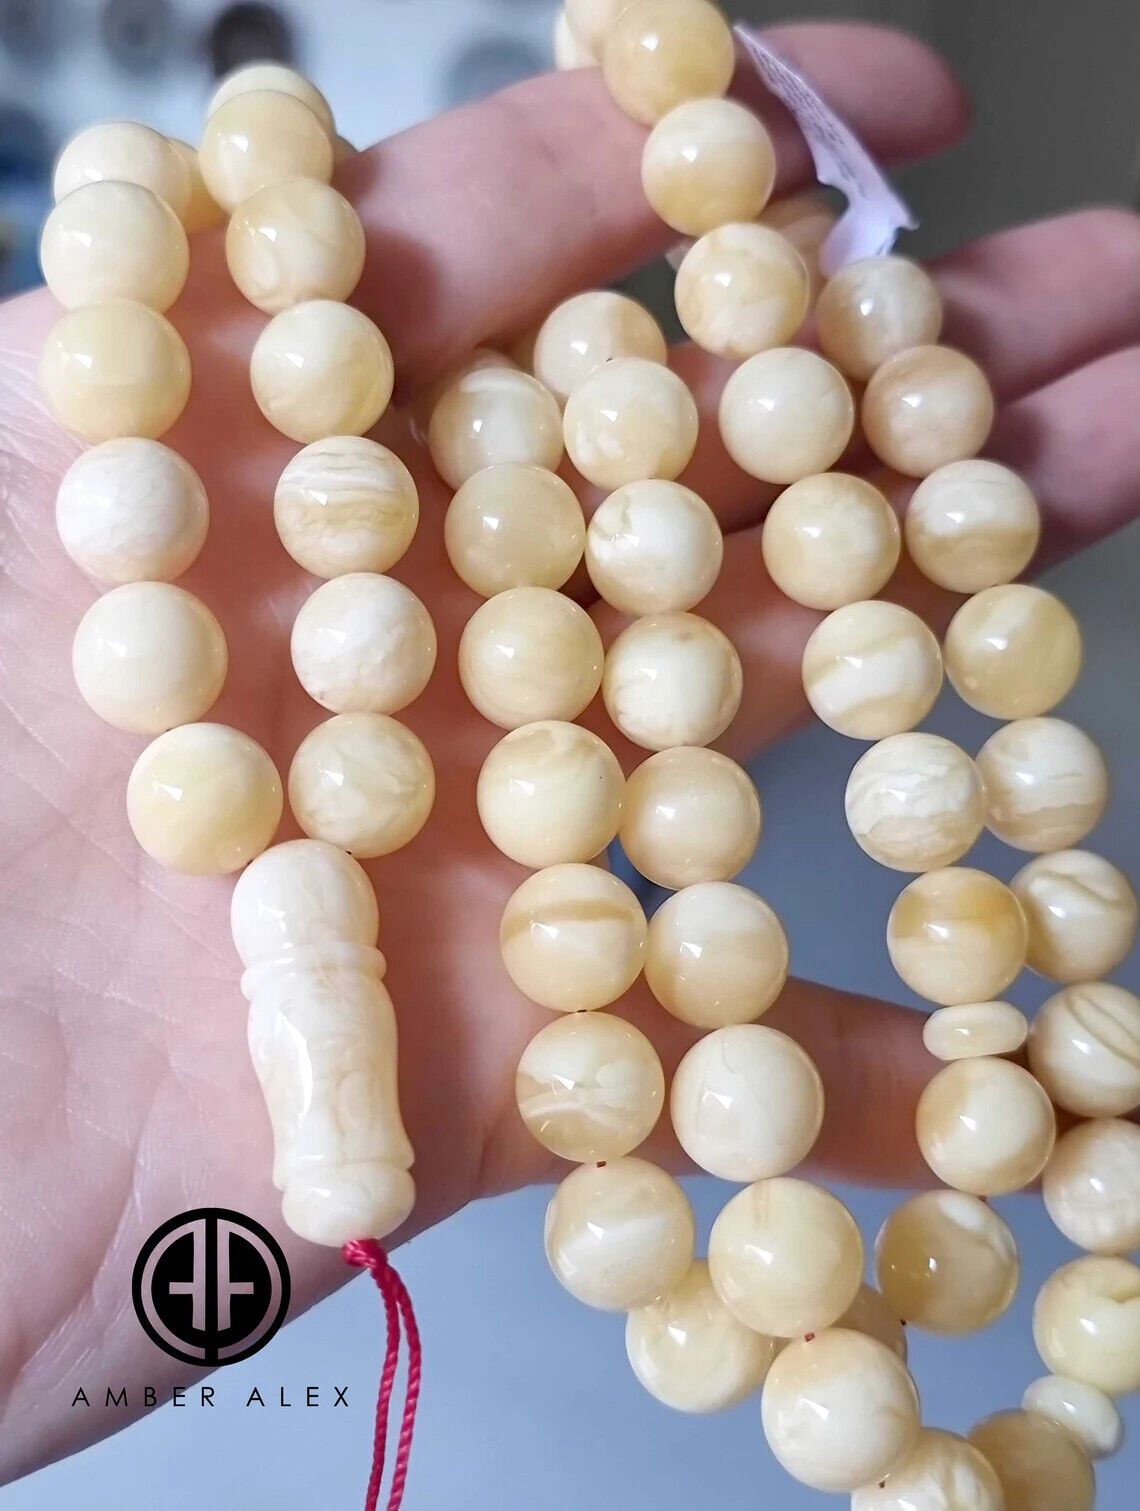 Yellow With White Amber Round Shape 11mm Islamic Prayer Beads